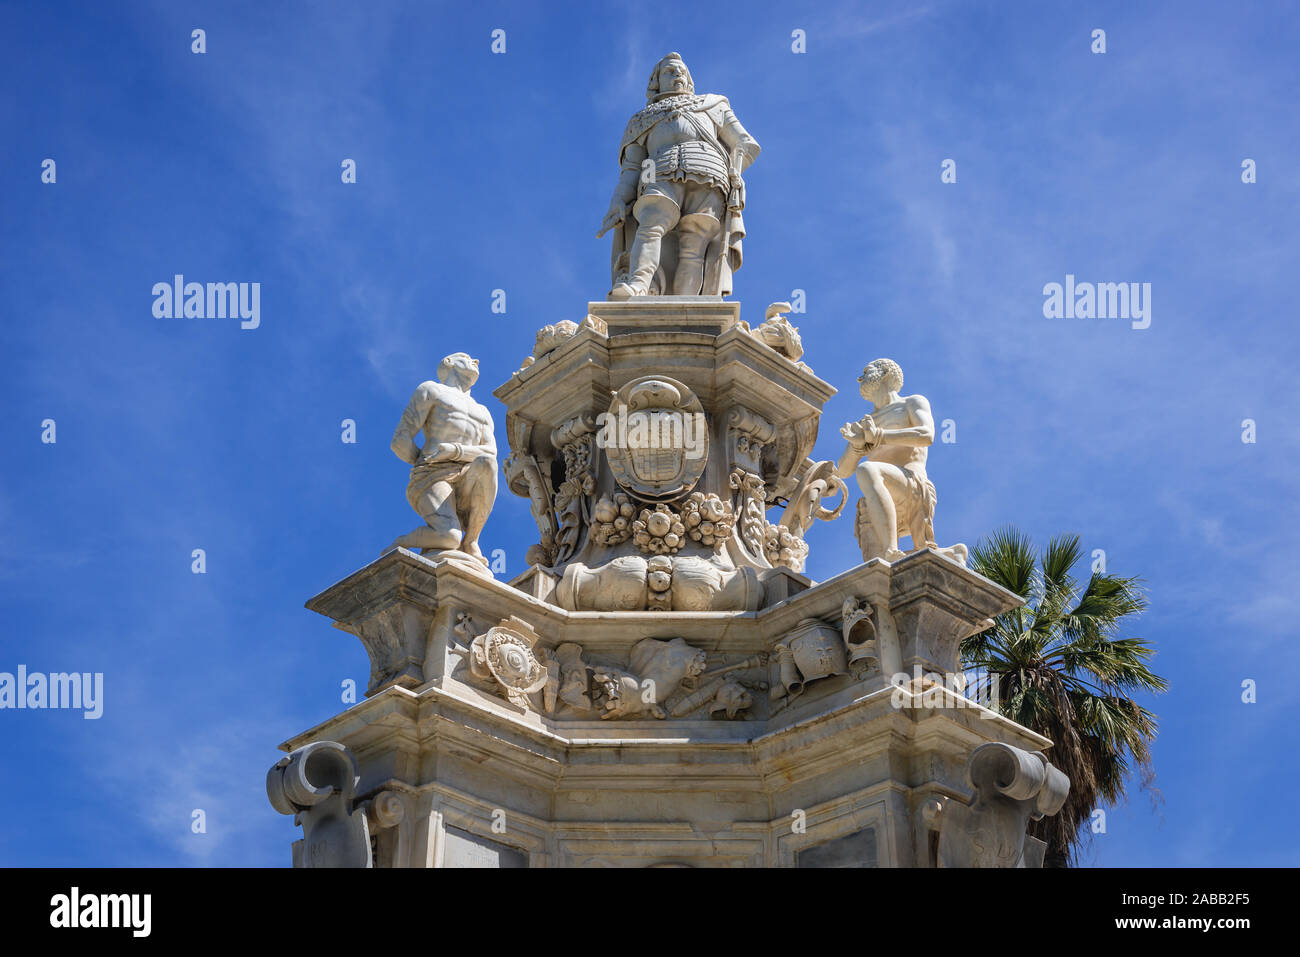 Teatro marmoreo monumento eretto nel 1662 di fronte a Palazzo Reale noto anche come Palazzo dei Normanni a Palermo, la capitale della regione Sicilia, Italia Foto Stock